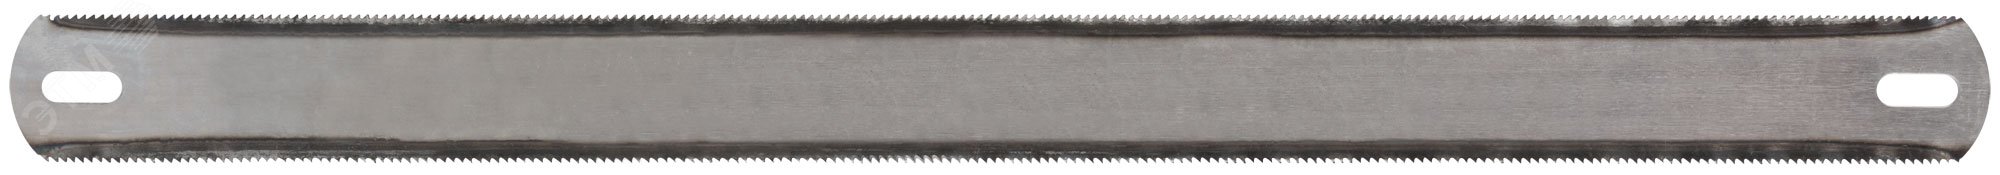 Полотна ножовочные по металлу, каленый зуб, широкие двусторонние 300х25 мм, 36 шт 40160 FIT - превью